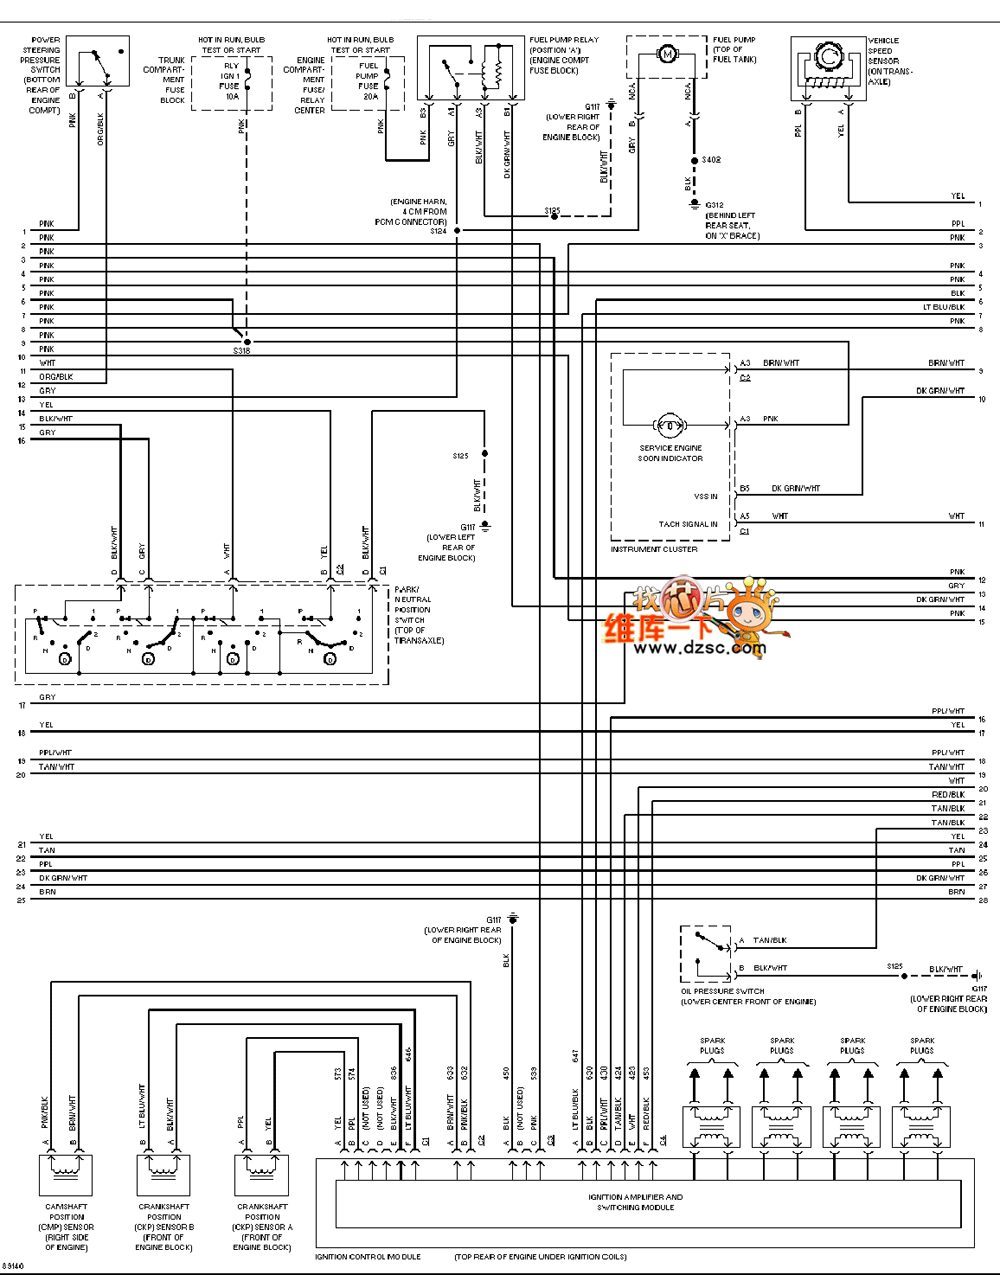 Cadillac deville 4.6L engine performance circuit diagram 2 - Automotive